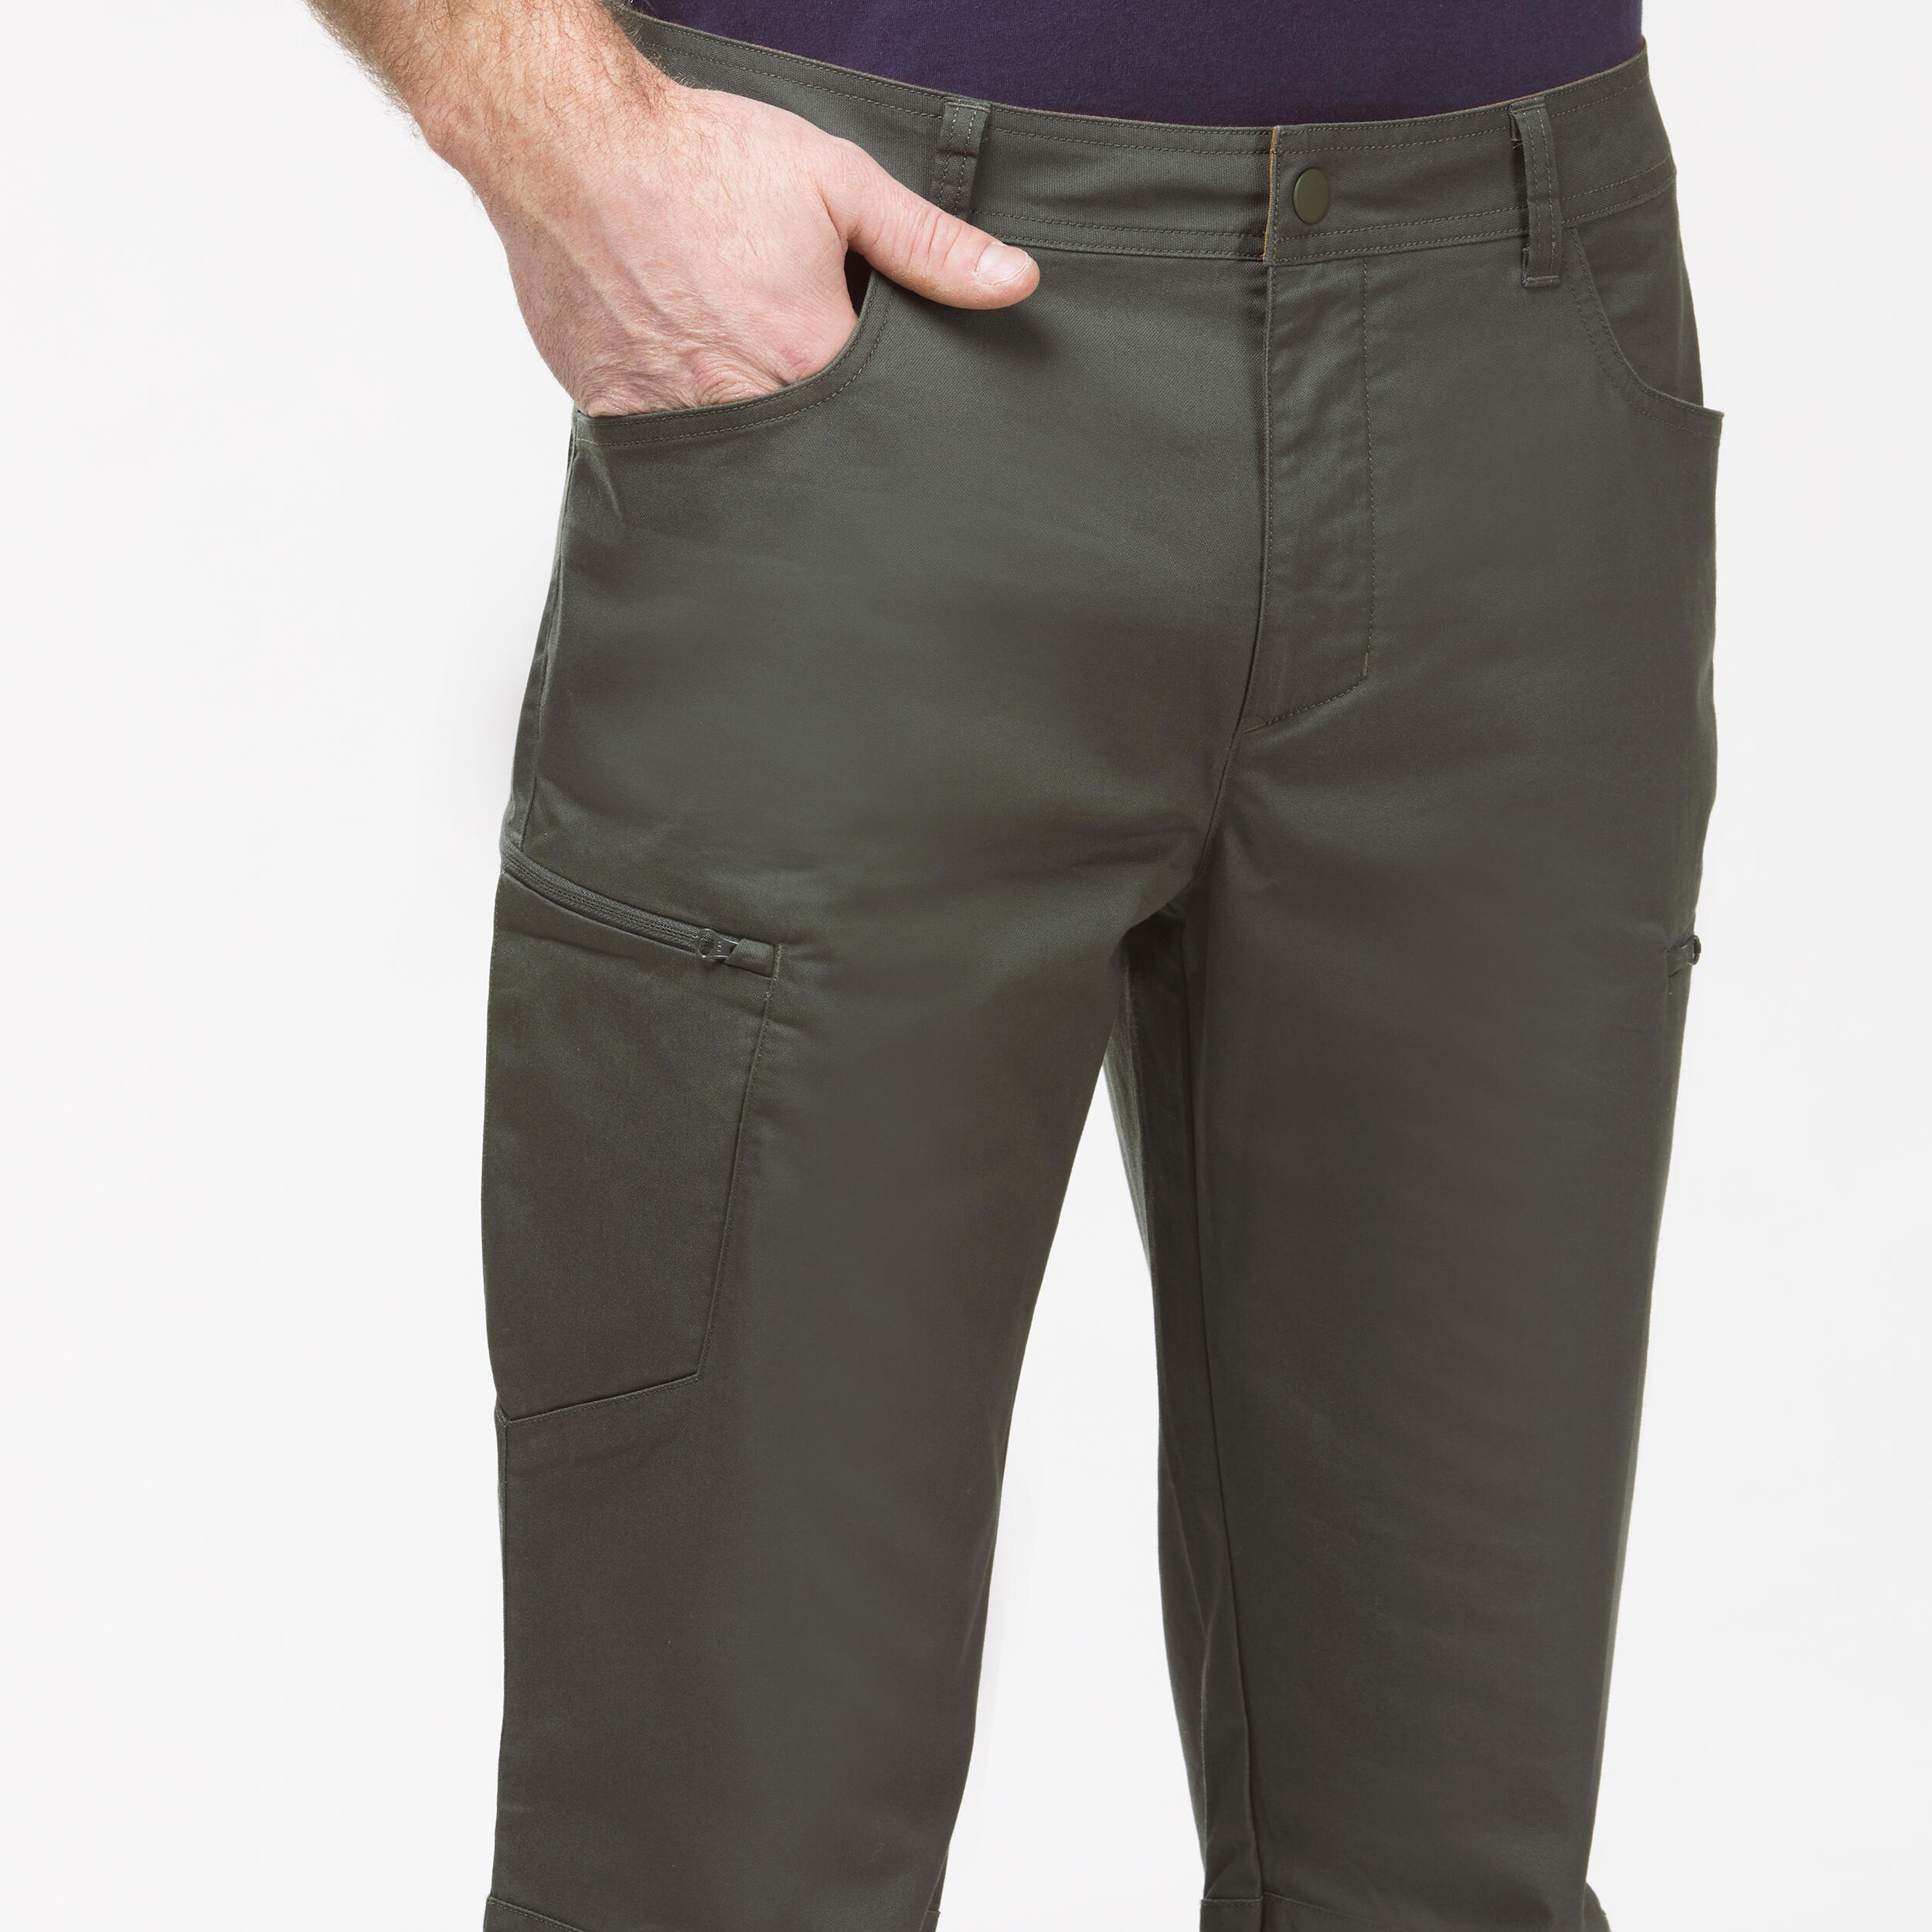 Men's NH500 Regular off-road hiking trousers 6/9